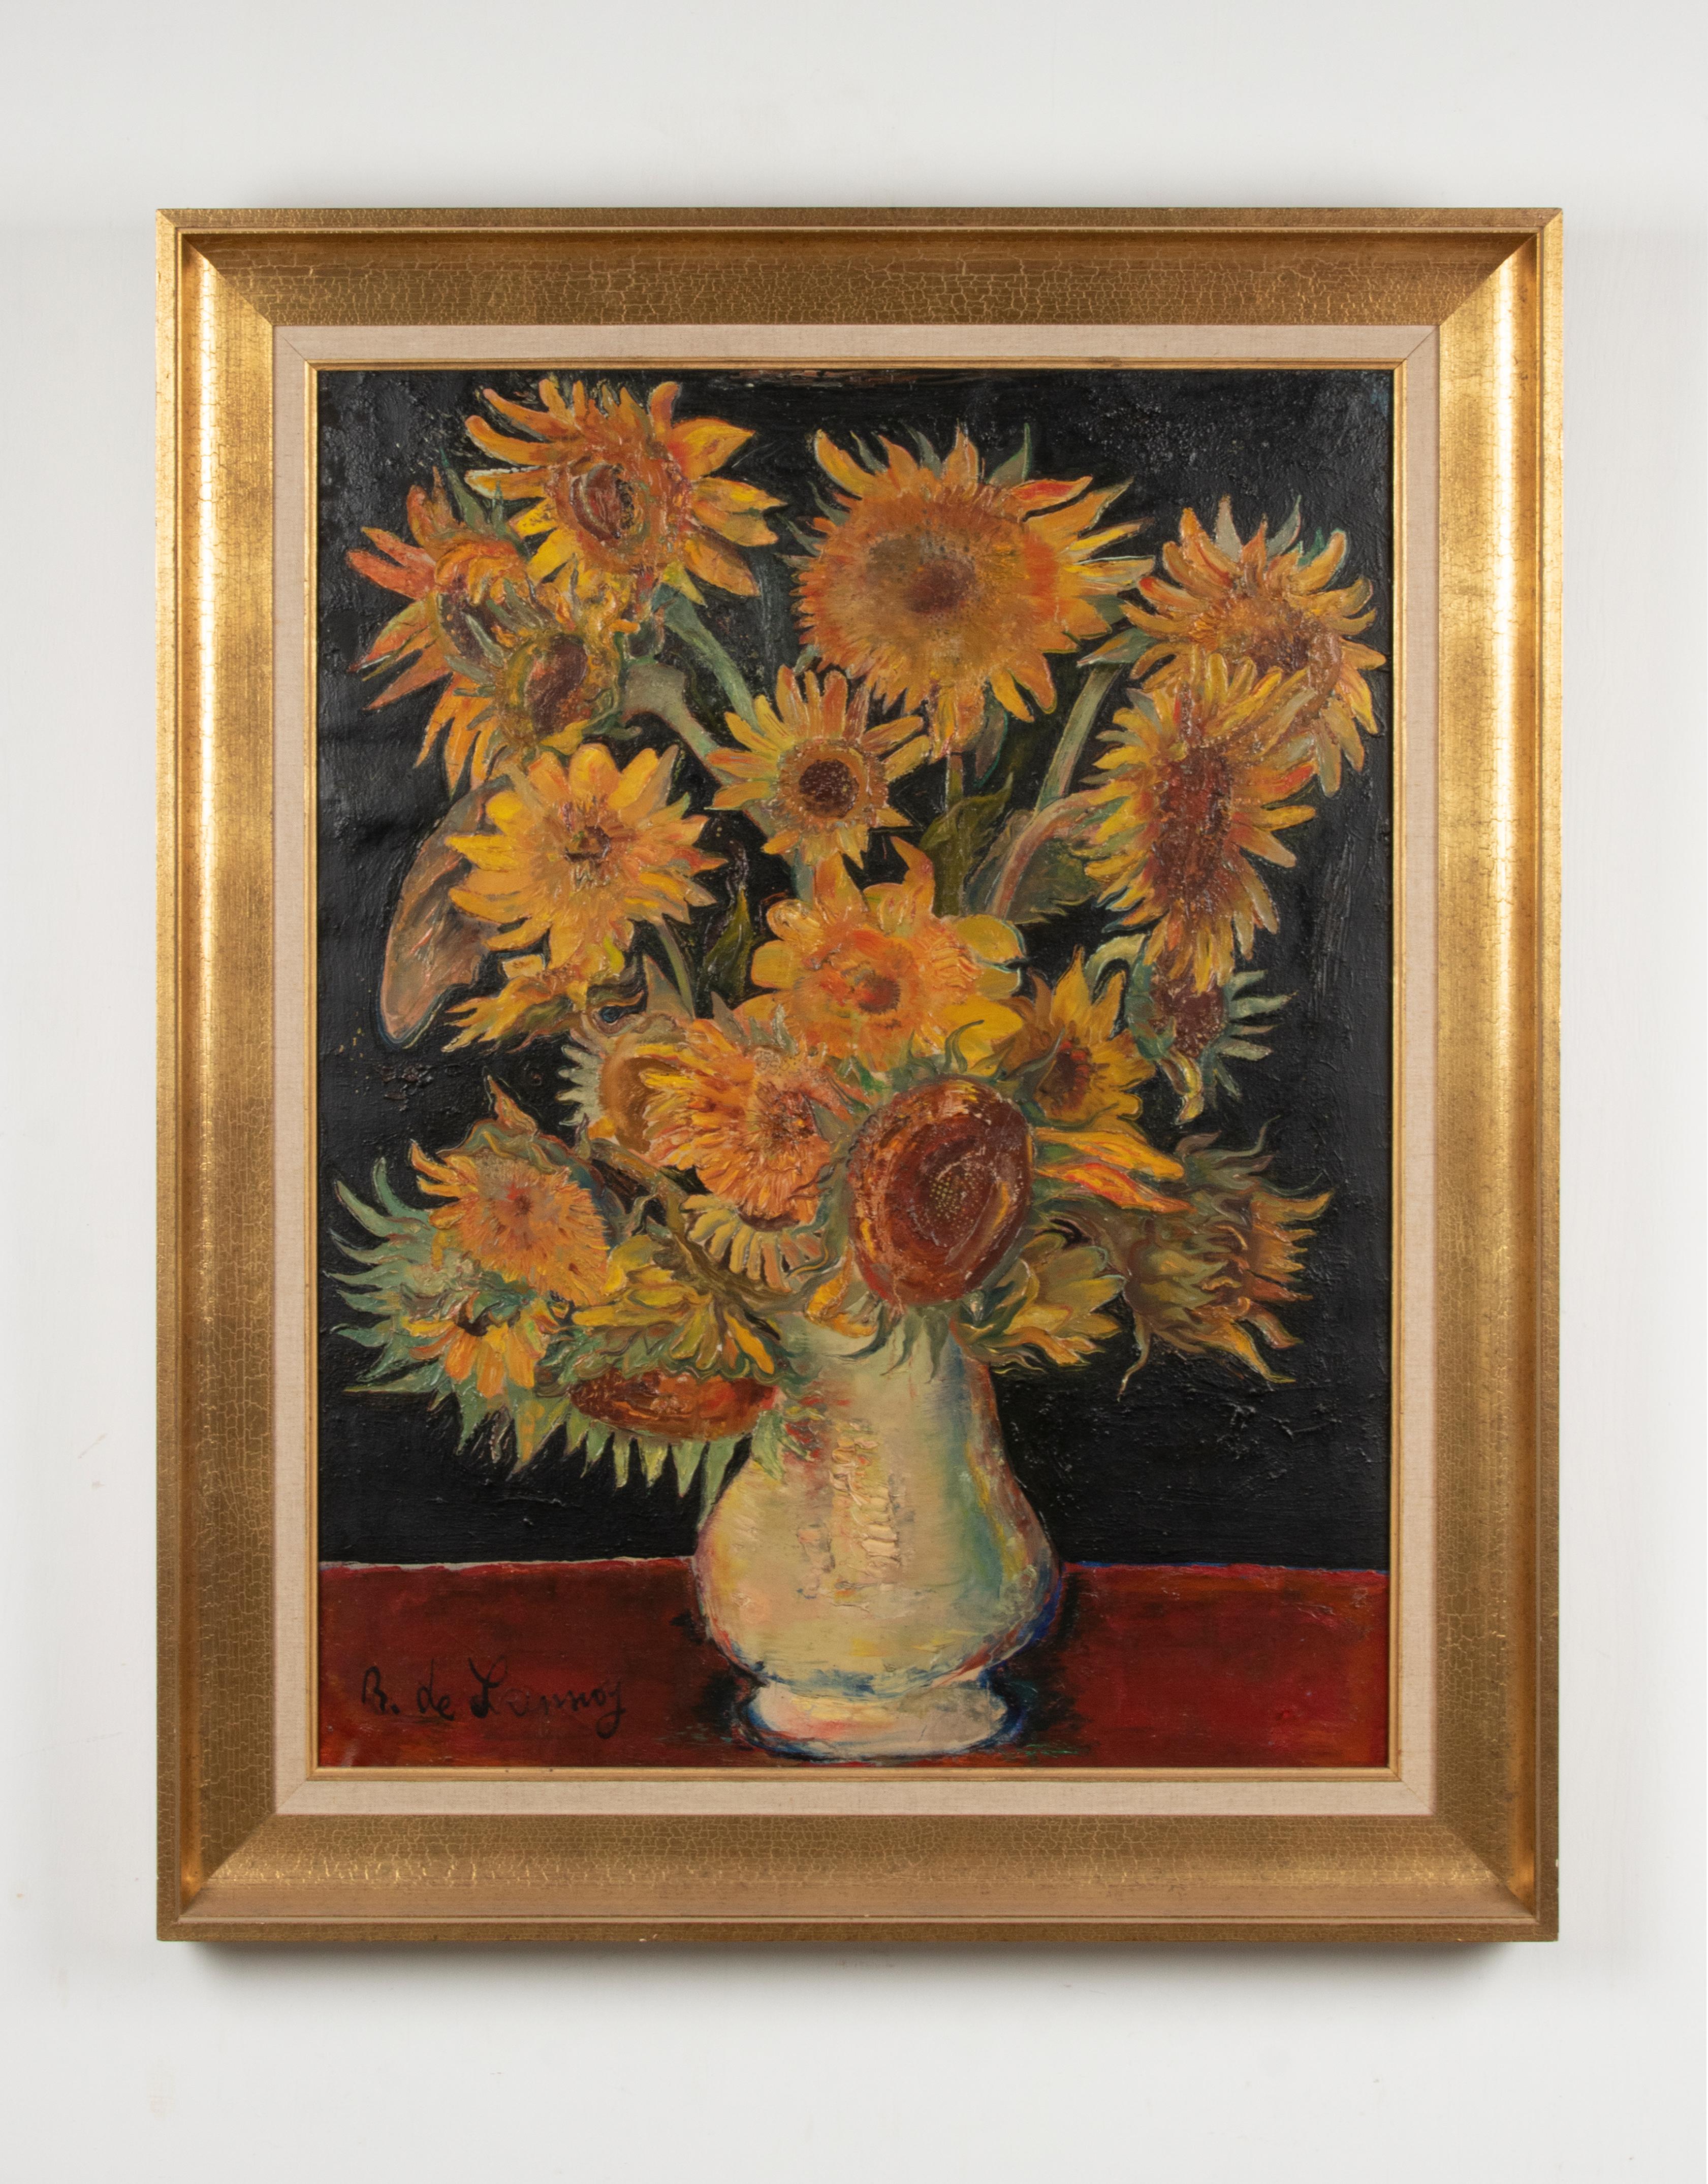 Großes und ausdrucksstarkes Gemälde mit einem Blumenstillleben von Sonnenblumen in einer Vase. Wunderschön impressionistisch angehaucht und dick gemalt. Eine klare Anspielung auf Vincent van Gogh, der für seine Sonnenblumen berühmt ist.
Das Gemälde